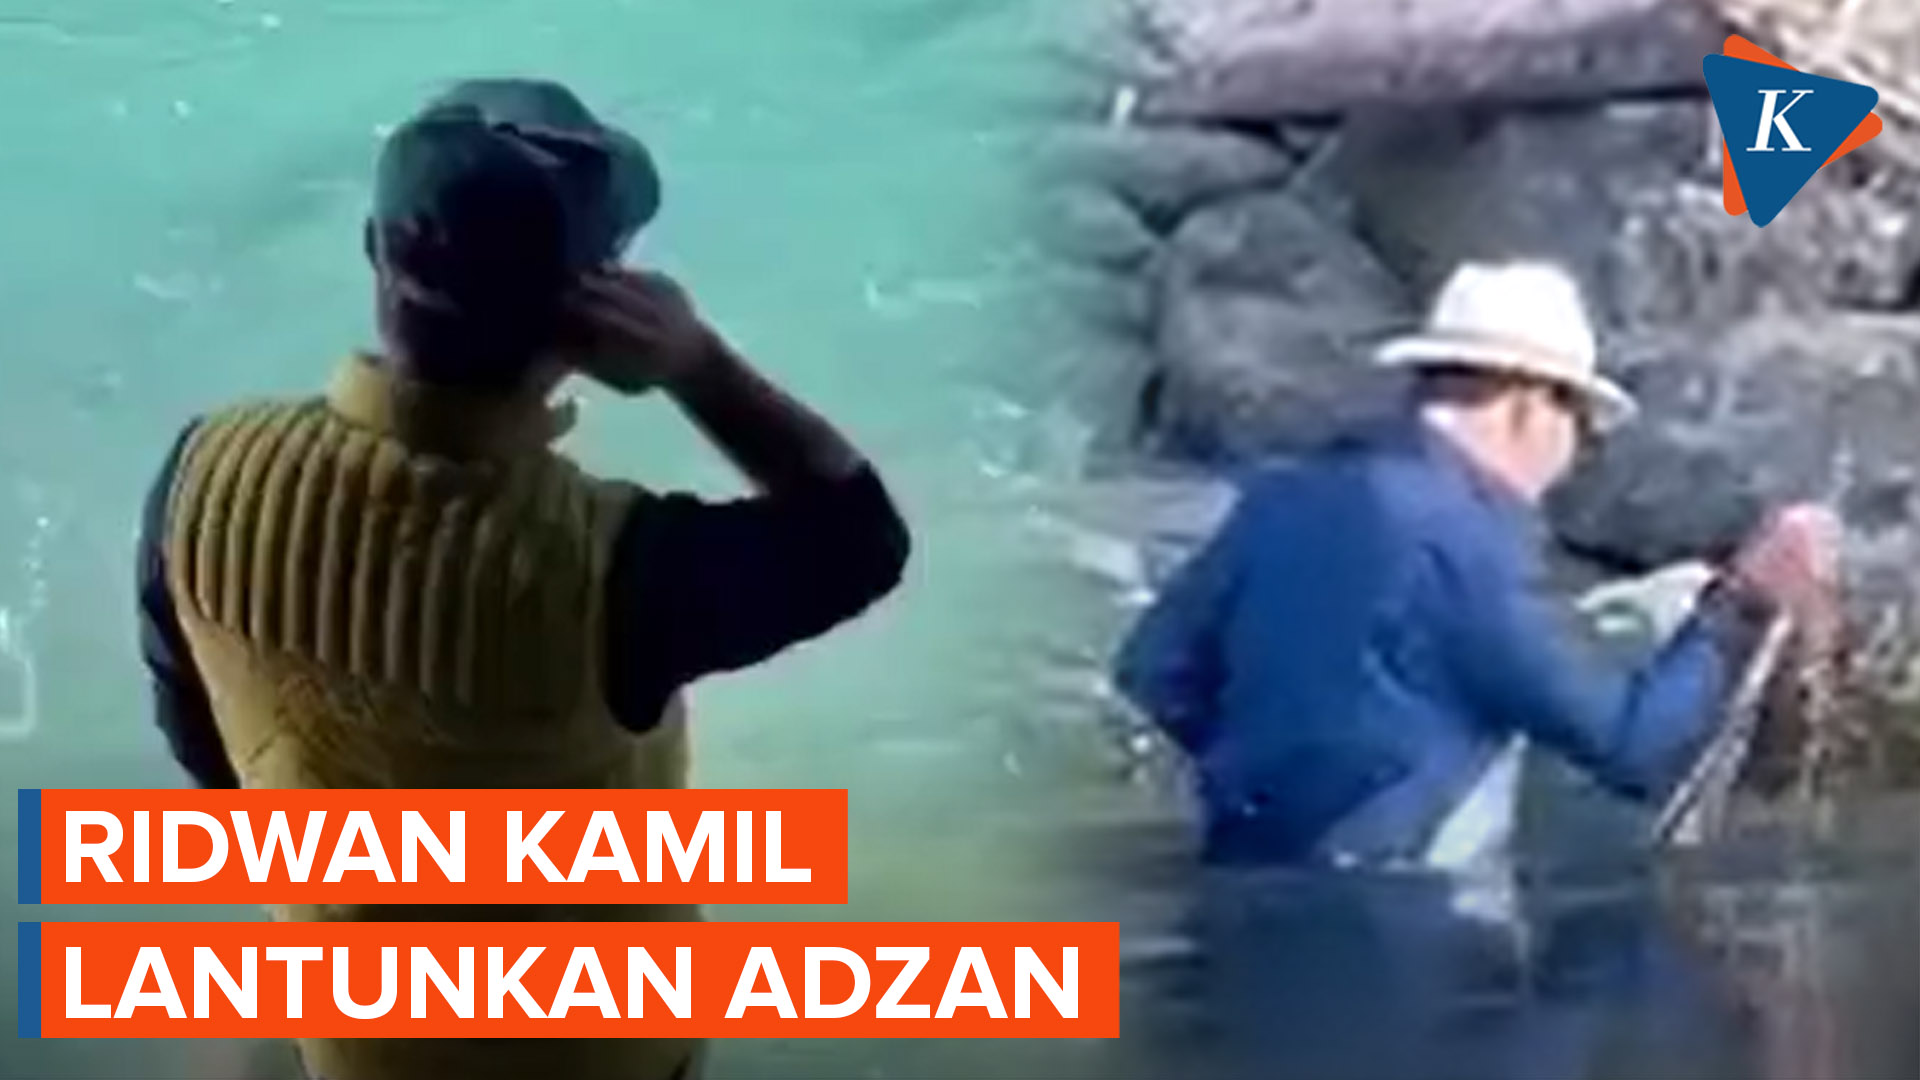 Momen Ridwan Kamil Lantunkan Adzan di Pinggir Sungai Aare